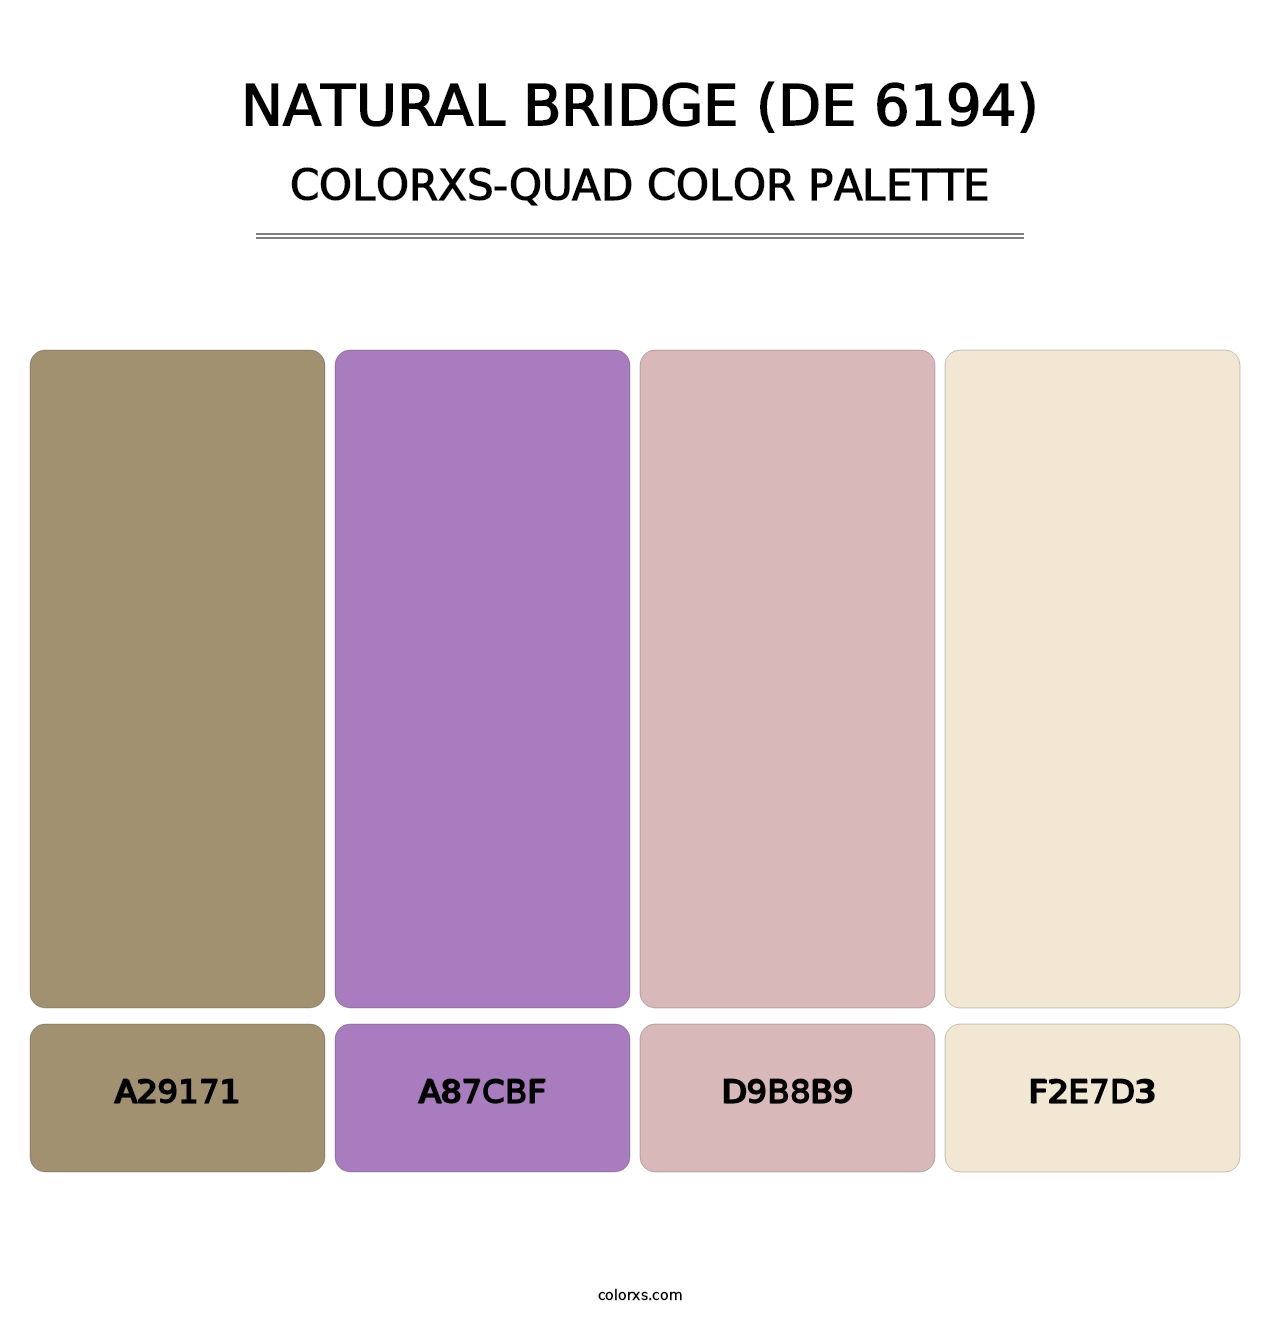 Natural Bridge (DE 6194) - Colorxs Quad Palette